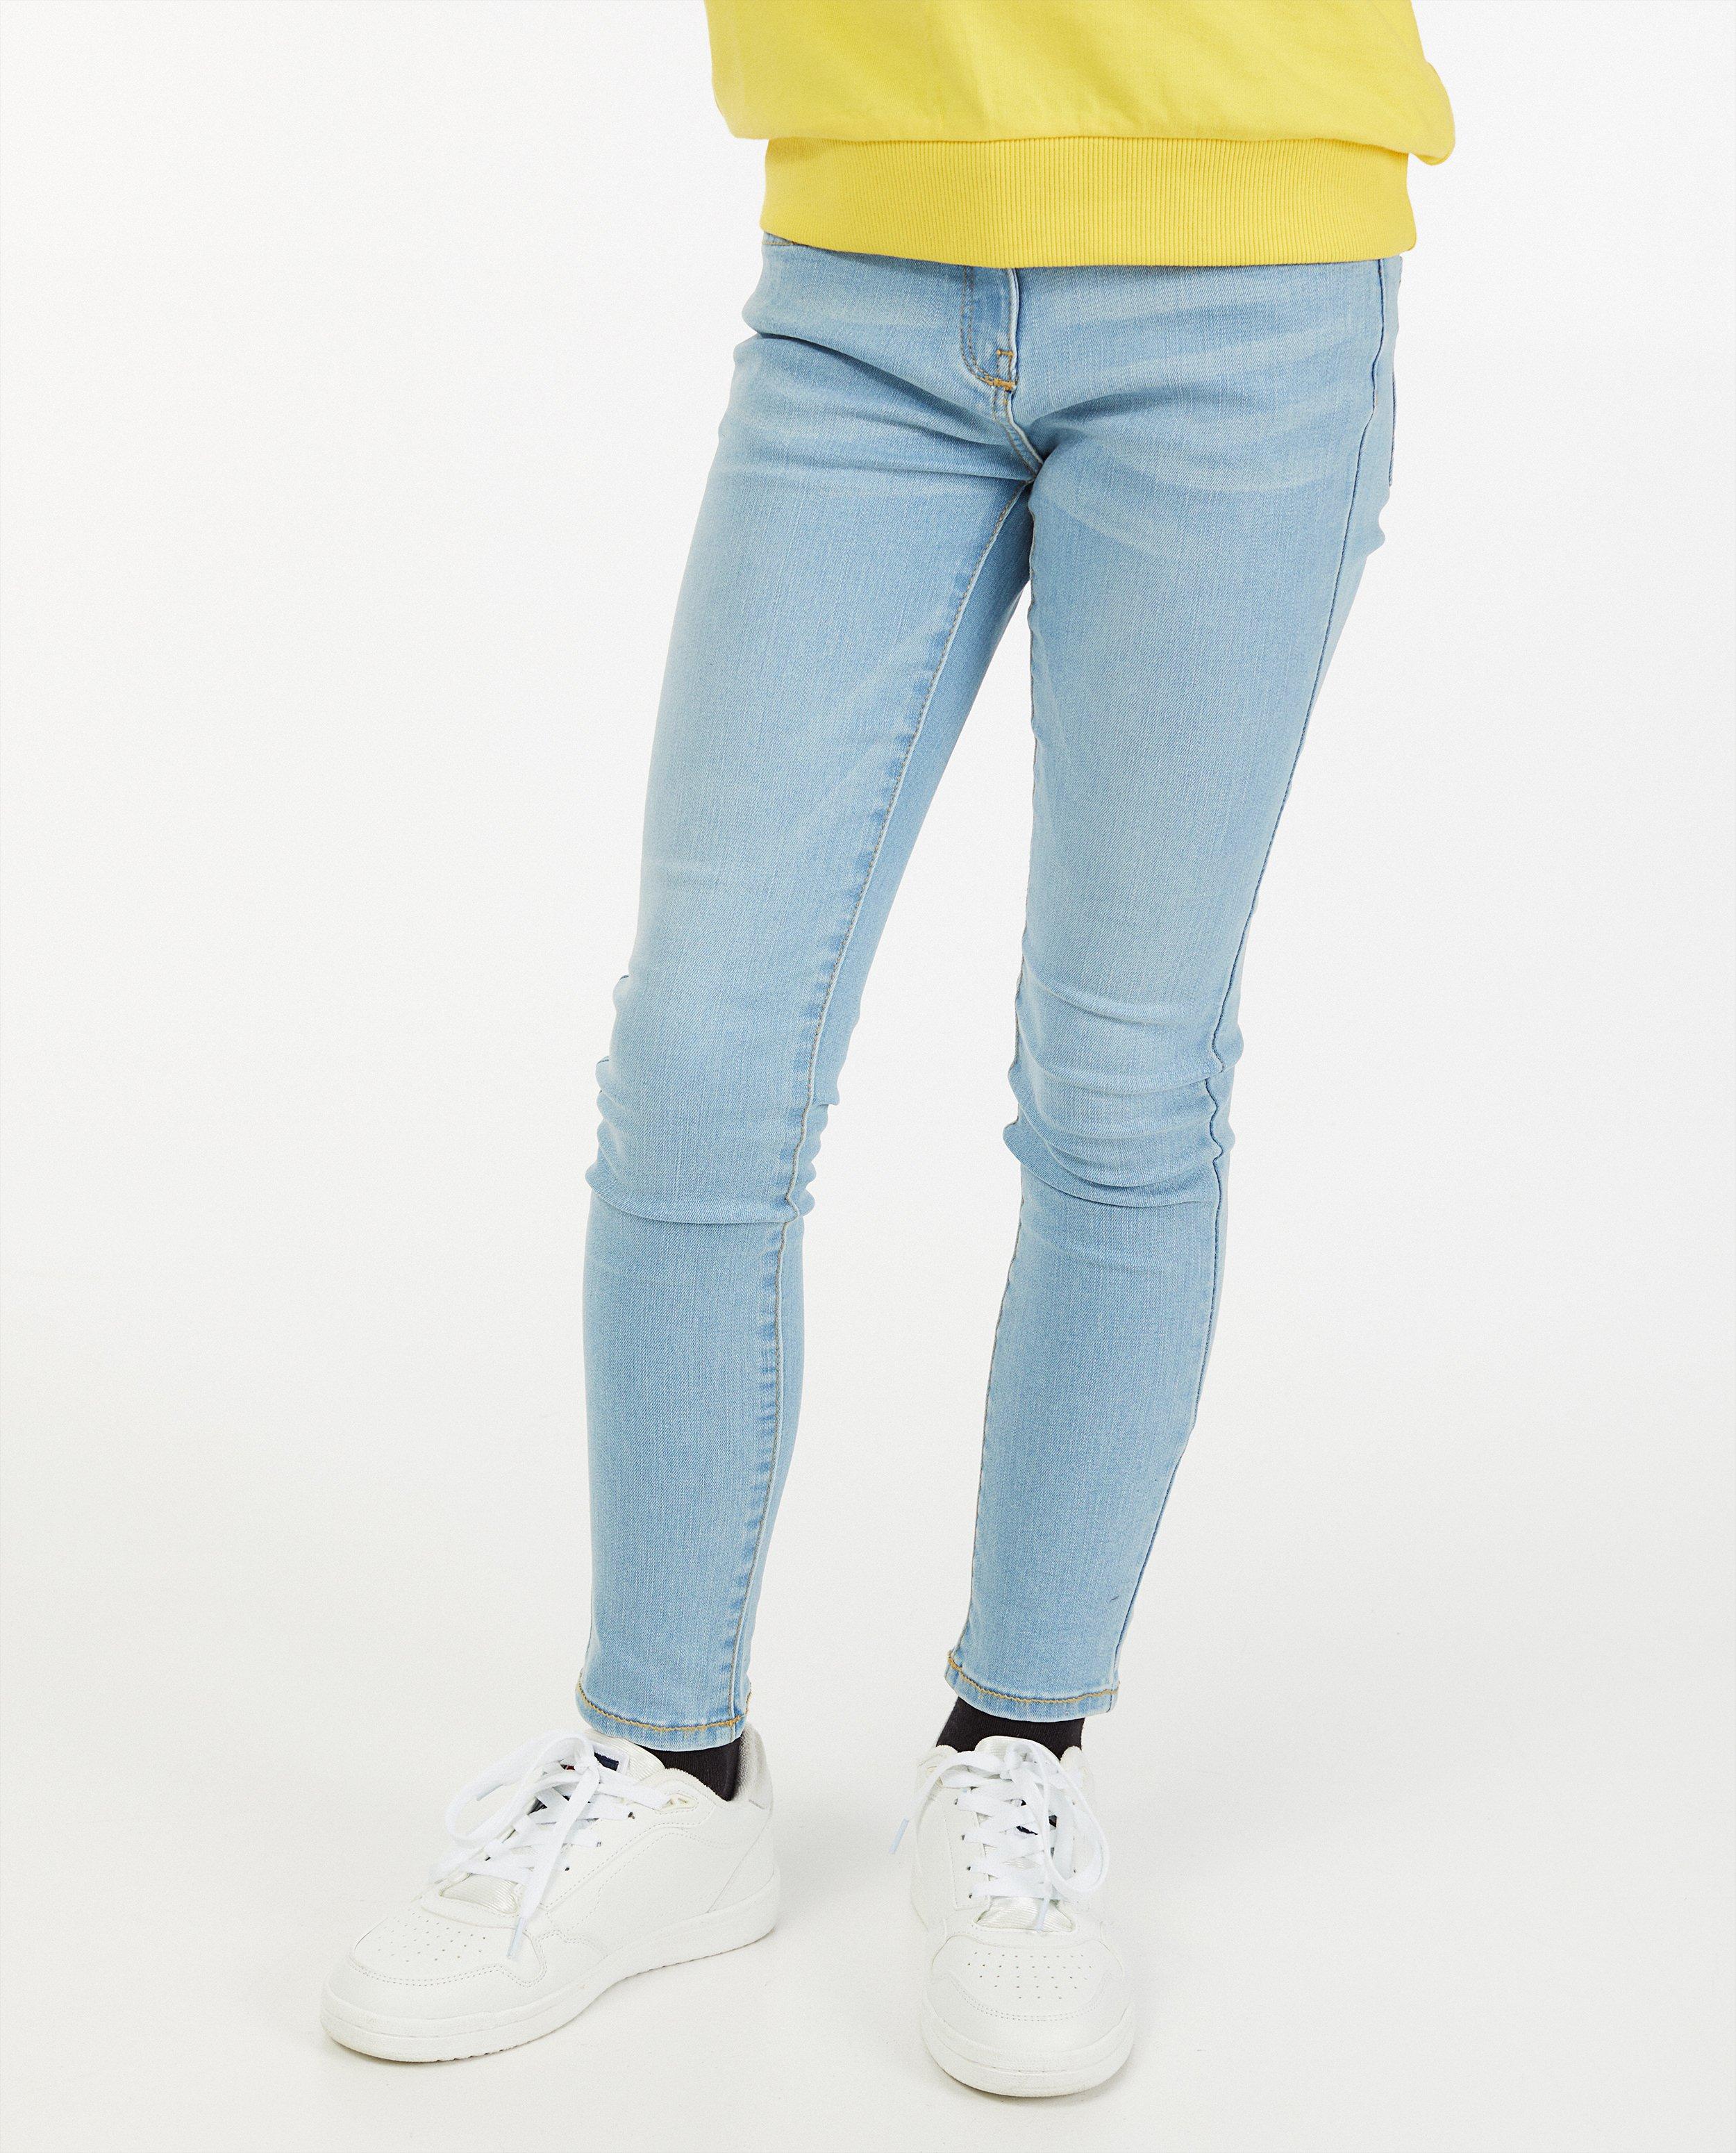 Eisend Hose Jeans Stiefelhose blau Mädchen Gr.116,122,134,140,164,170,176 